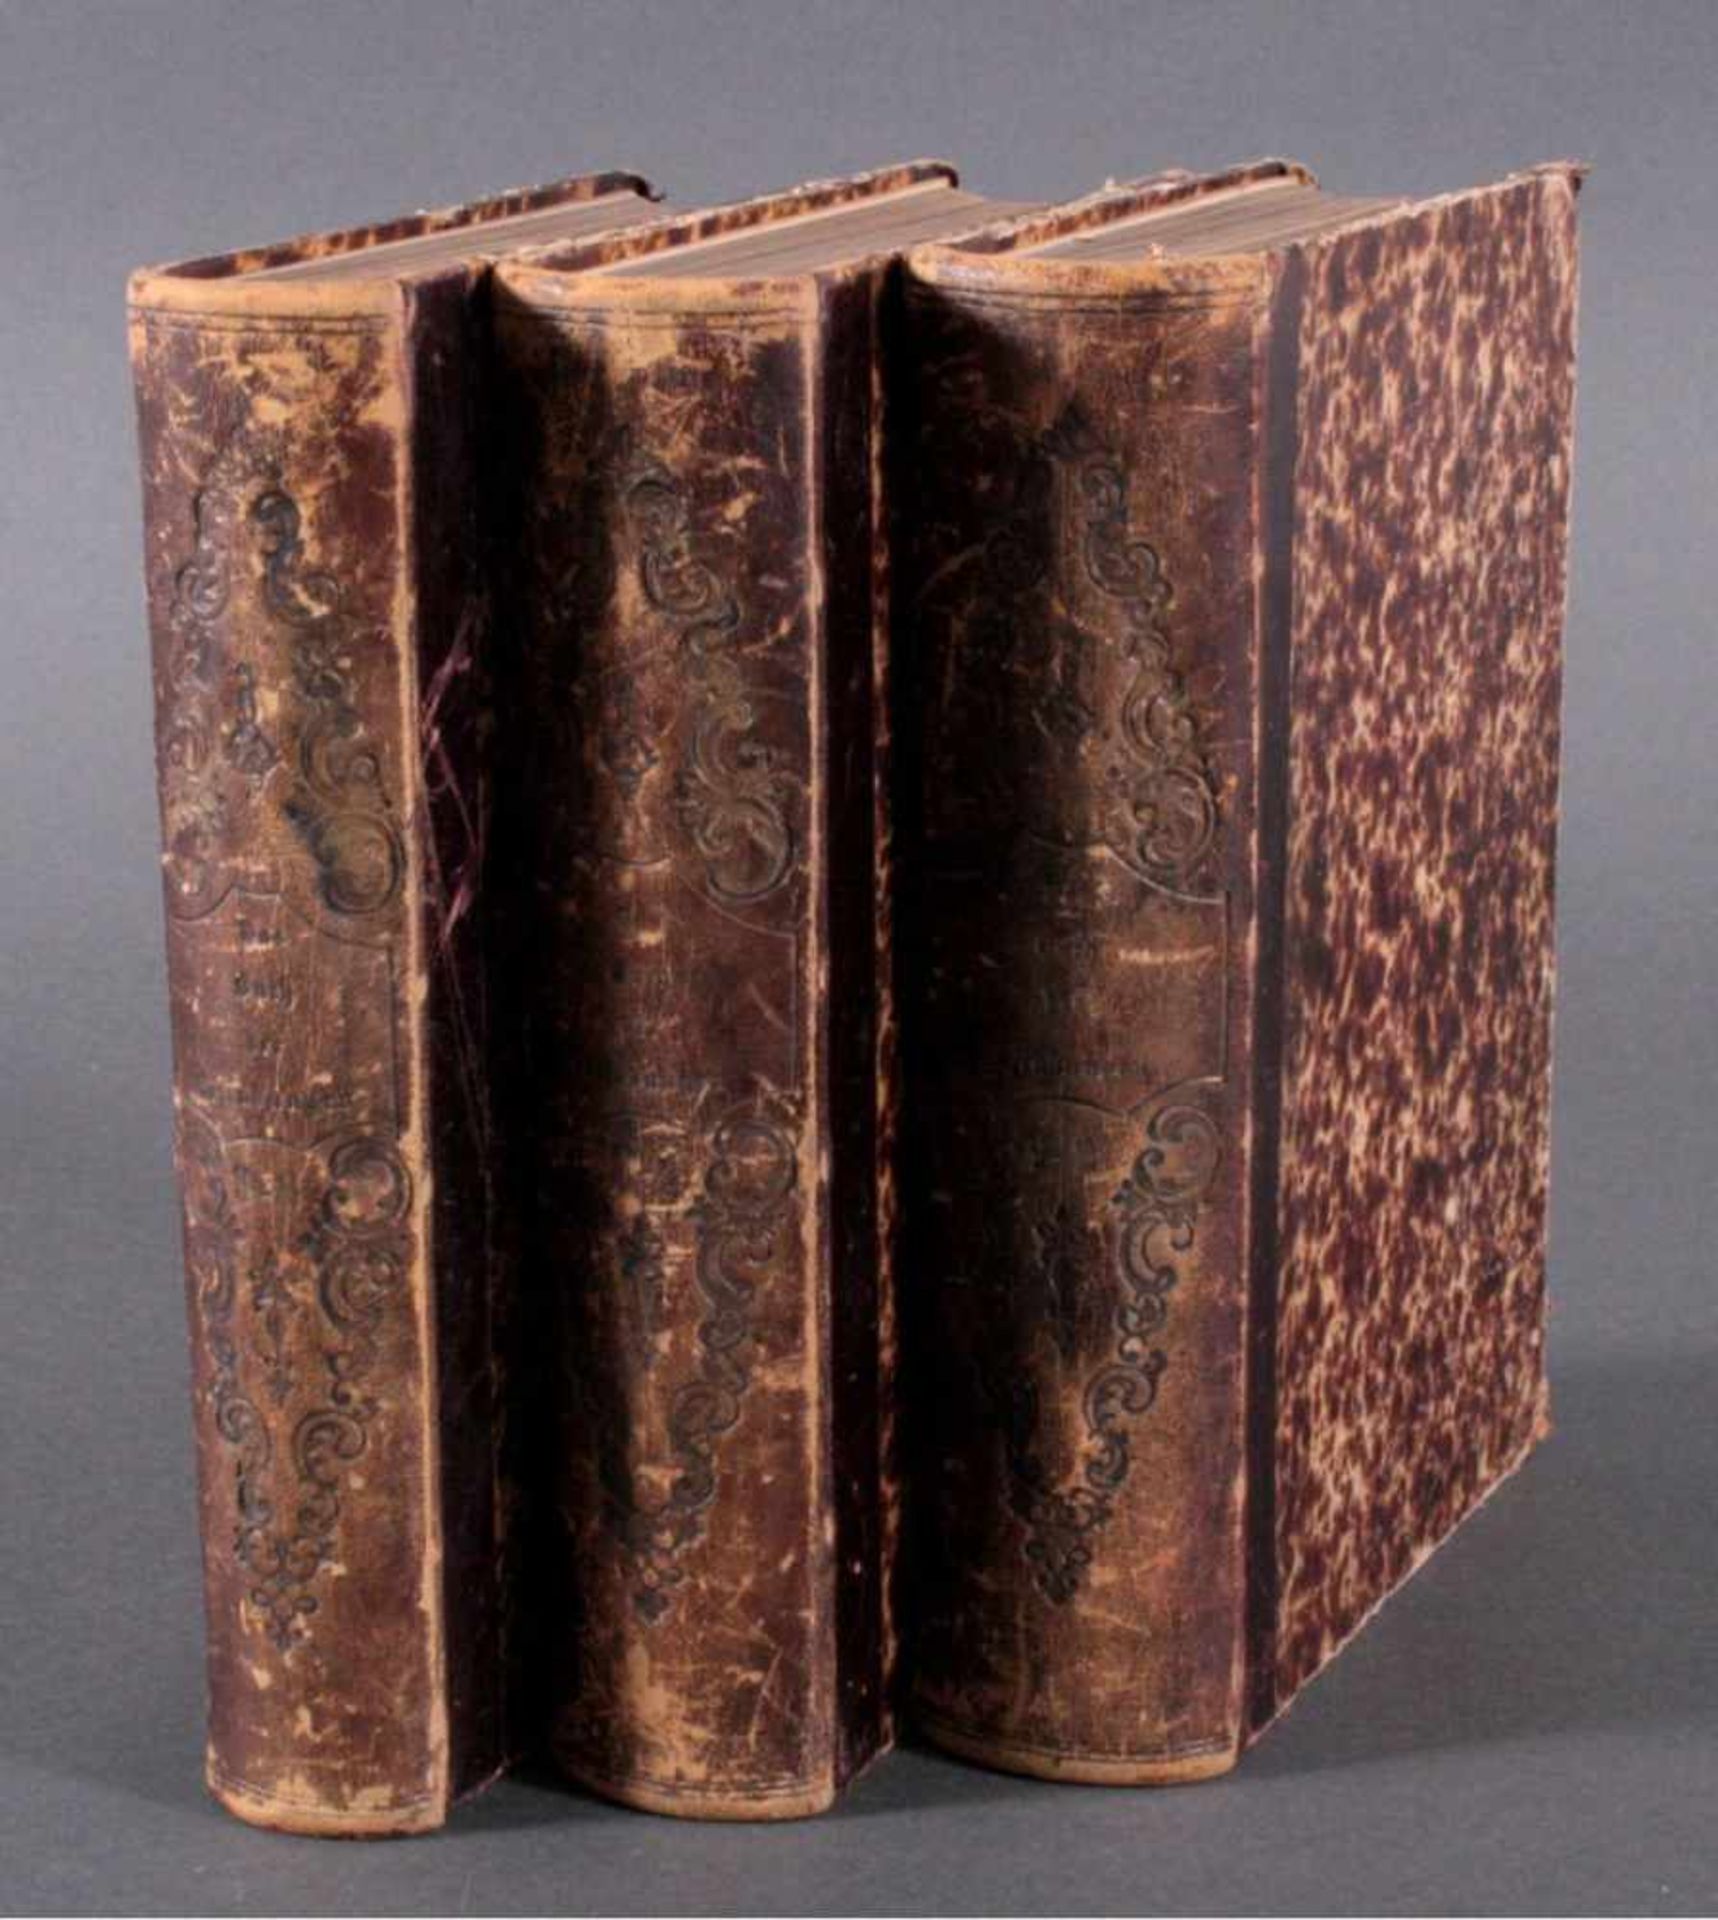 Das neue Buch der Erfindungen, Gewerbe und Industrien, 18643 Bände, Band 1,3 und 5, 1864-1867,